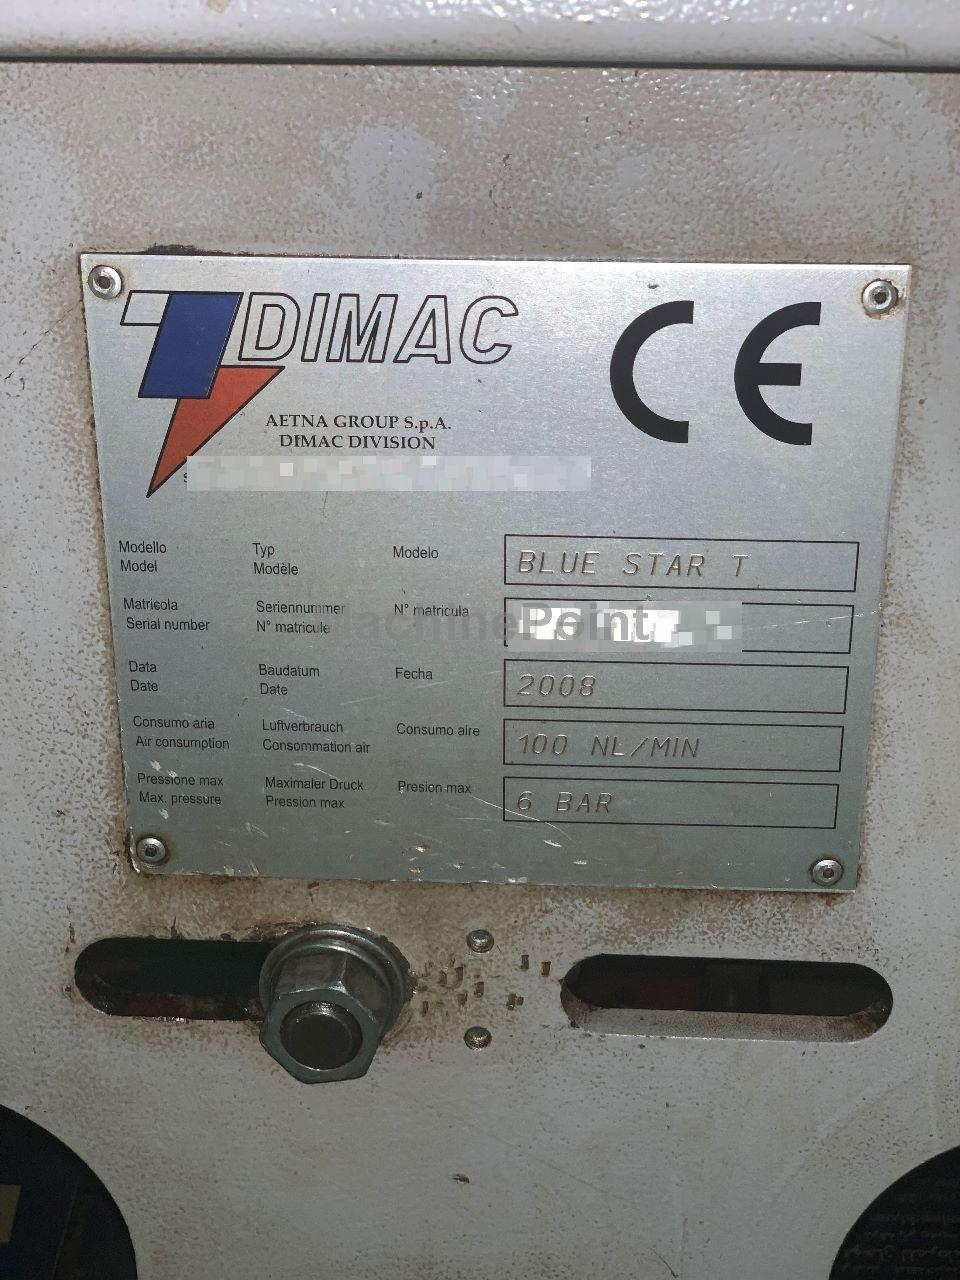 DIMAC - Blue Star - Maquinaria usada